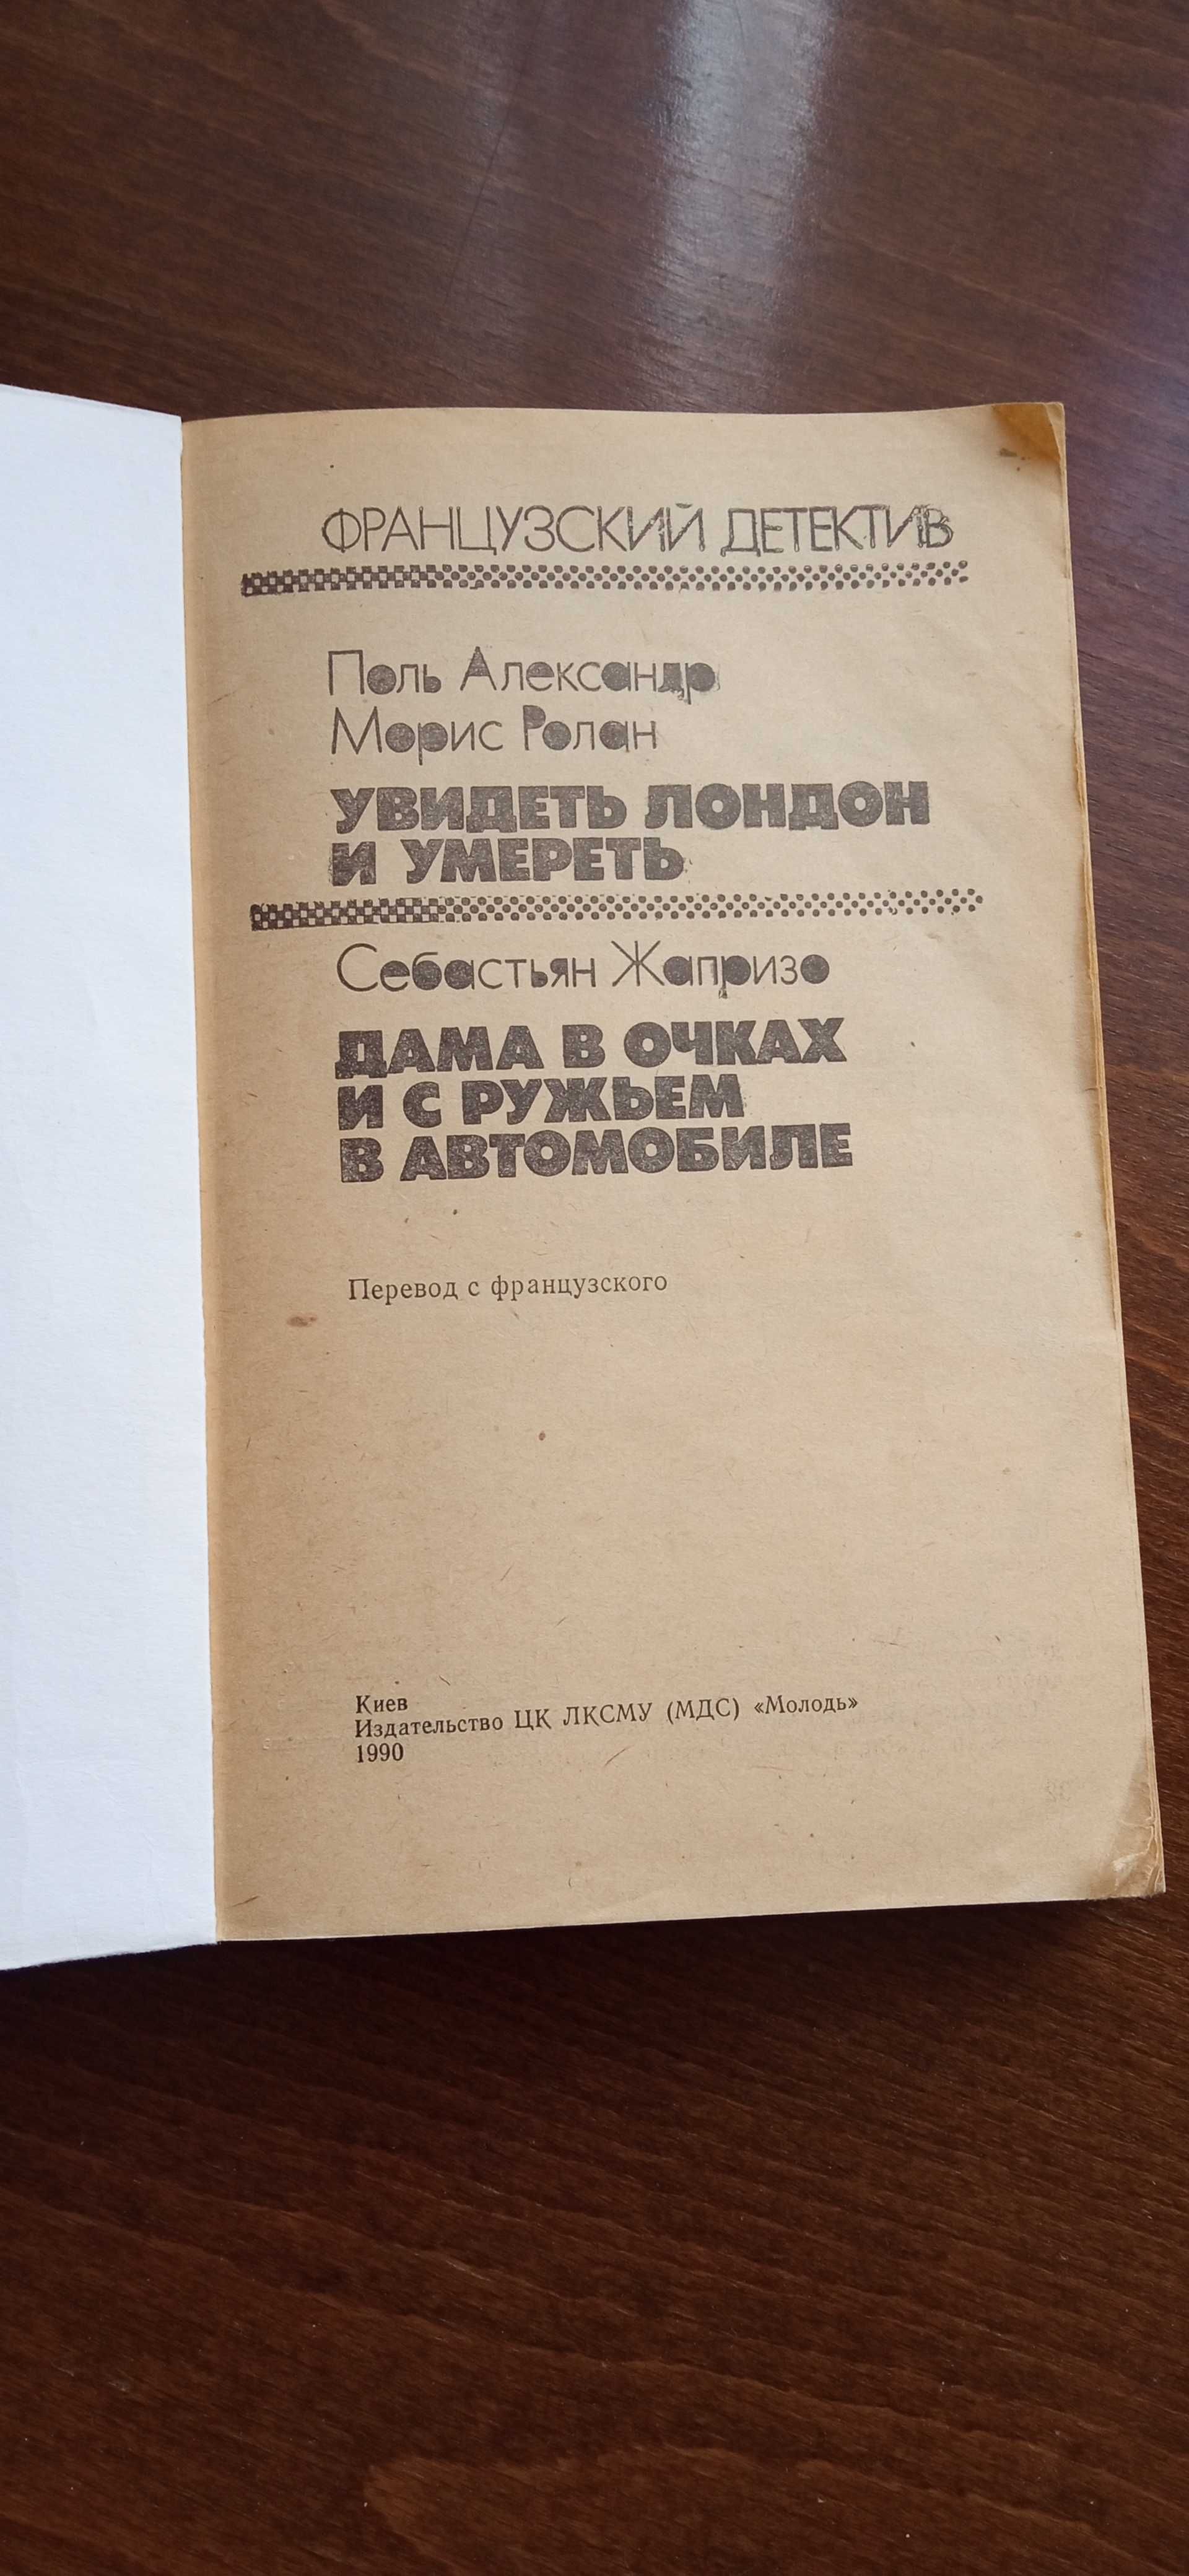 Французский детектив, книга, сборник, Киев издательство "Молодь" 1990г